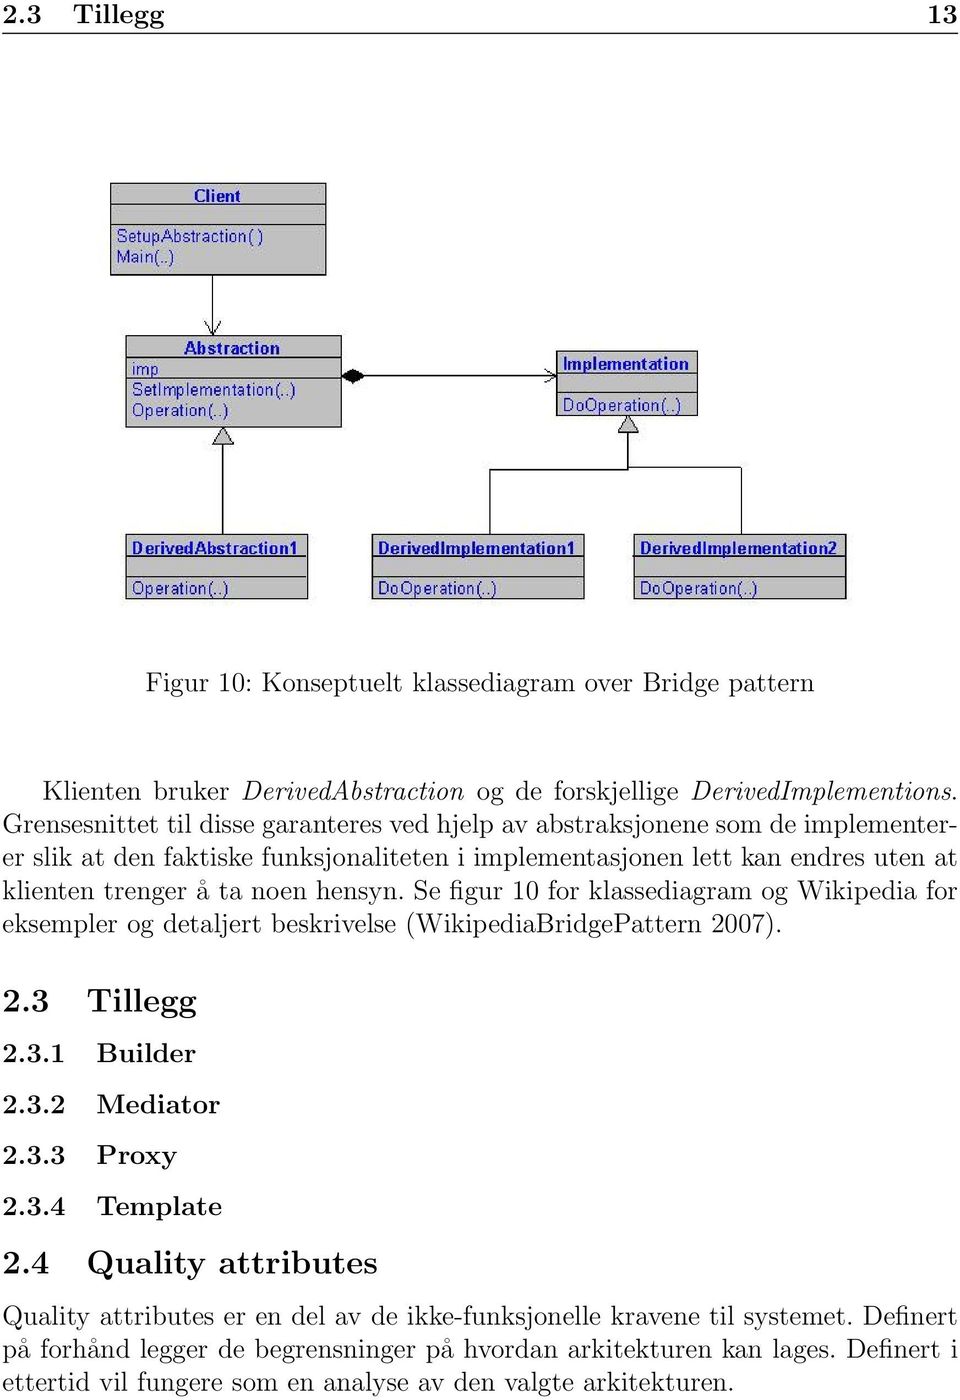 hensyn. Se figur 10 for klassediagram og Wikipedia for eksempler og detaljert beskrivelse (WikipediaBridgePattern 2007). 2.3 Tillegg 2.3.1 Builder 2.3.2 Mediator 2.3.3 Proxy 2.3.4 Template 2.